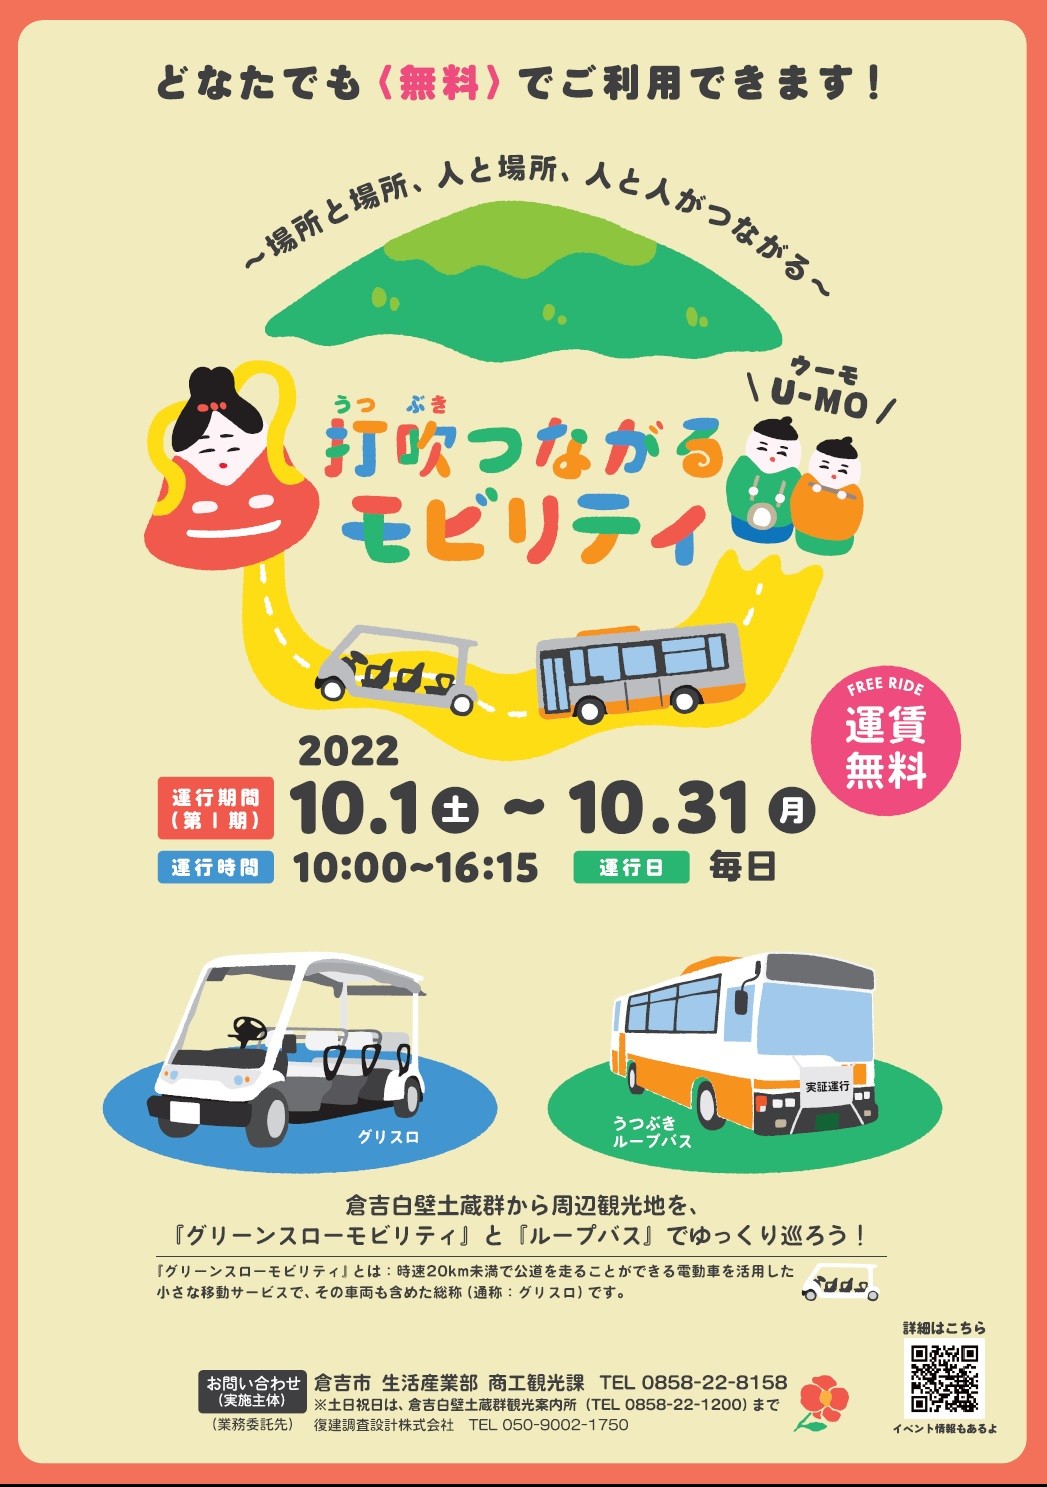 鳥取県倉吉市で実施される交通実証実験「打吹つながるモビリティ」のポスター